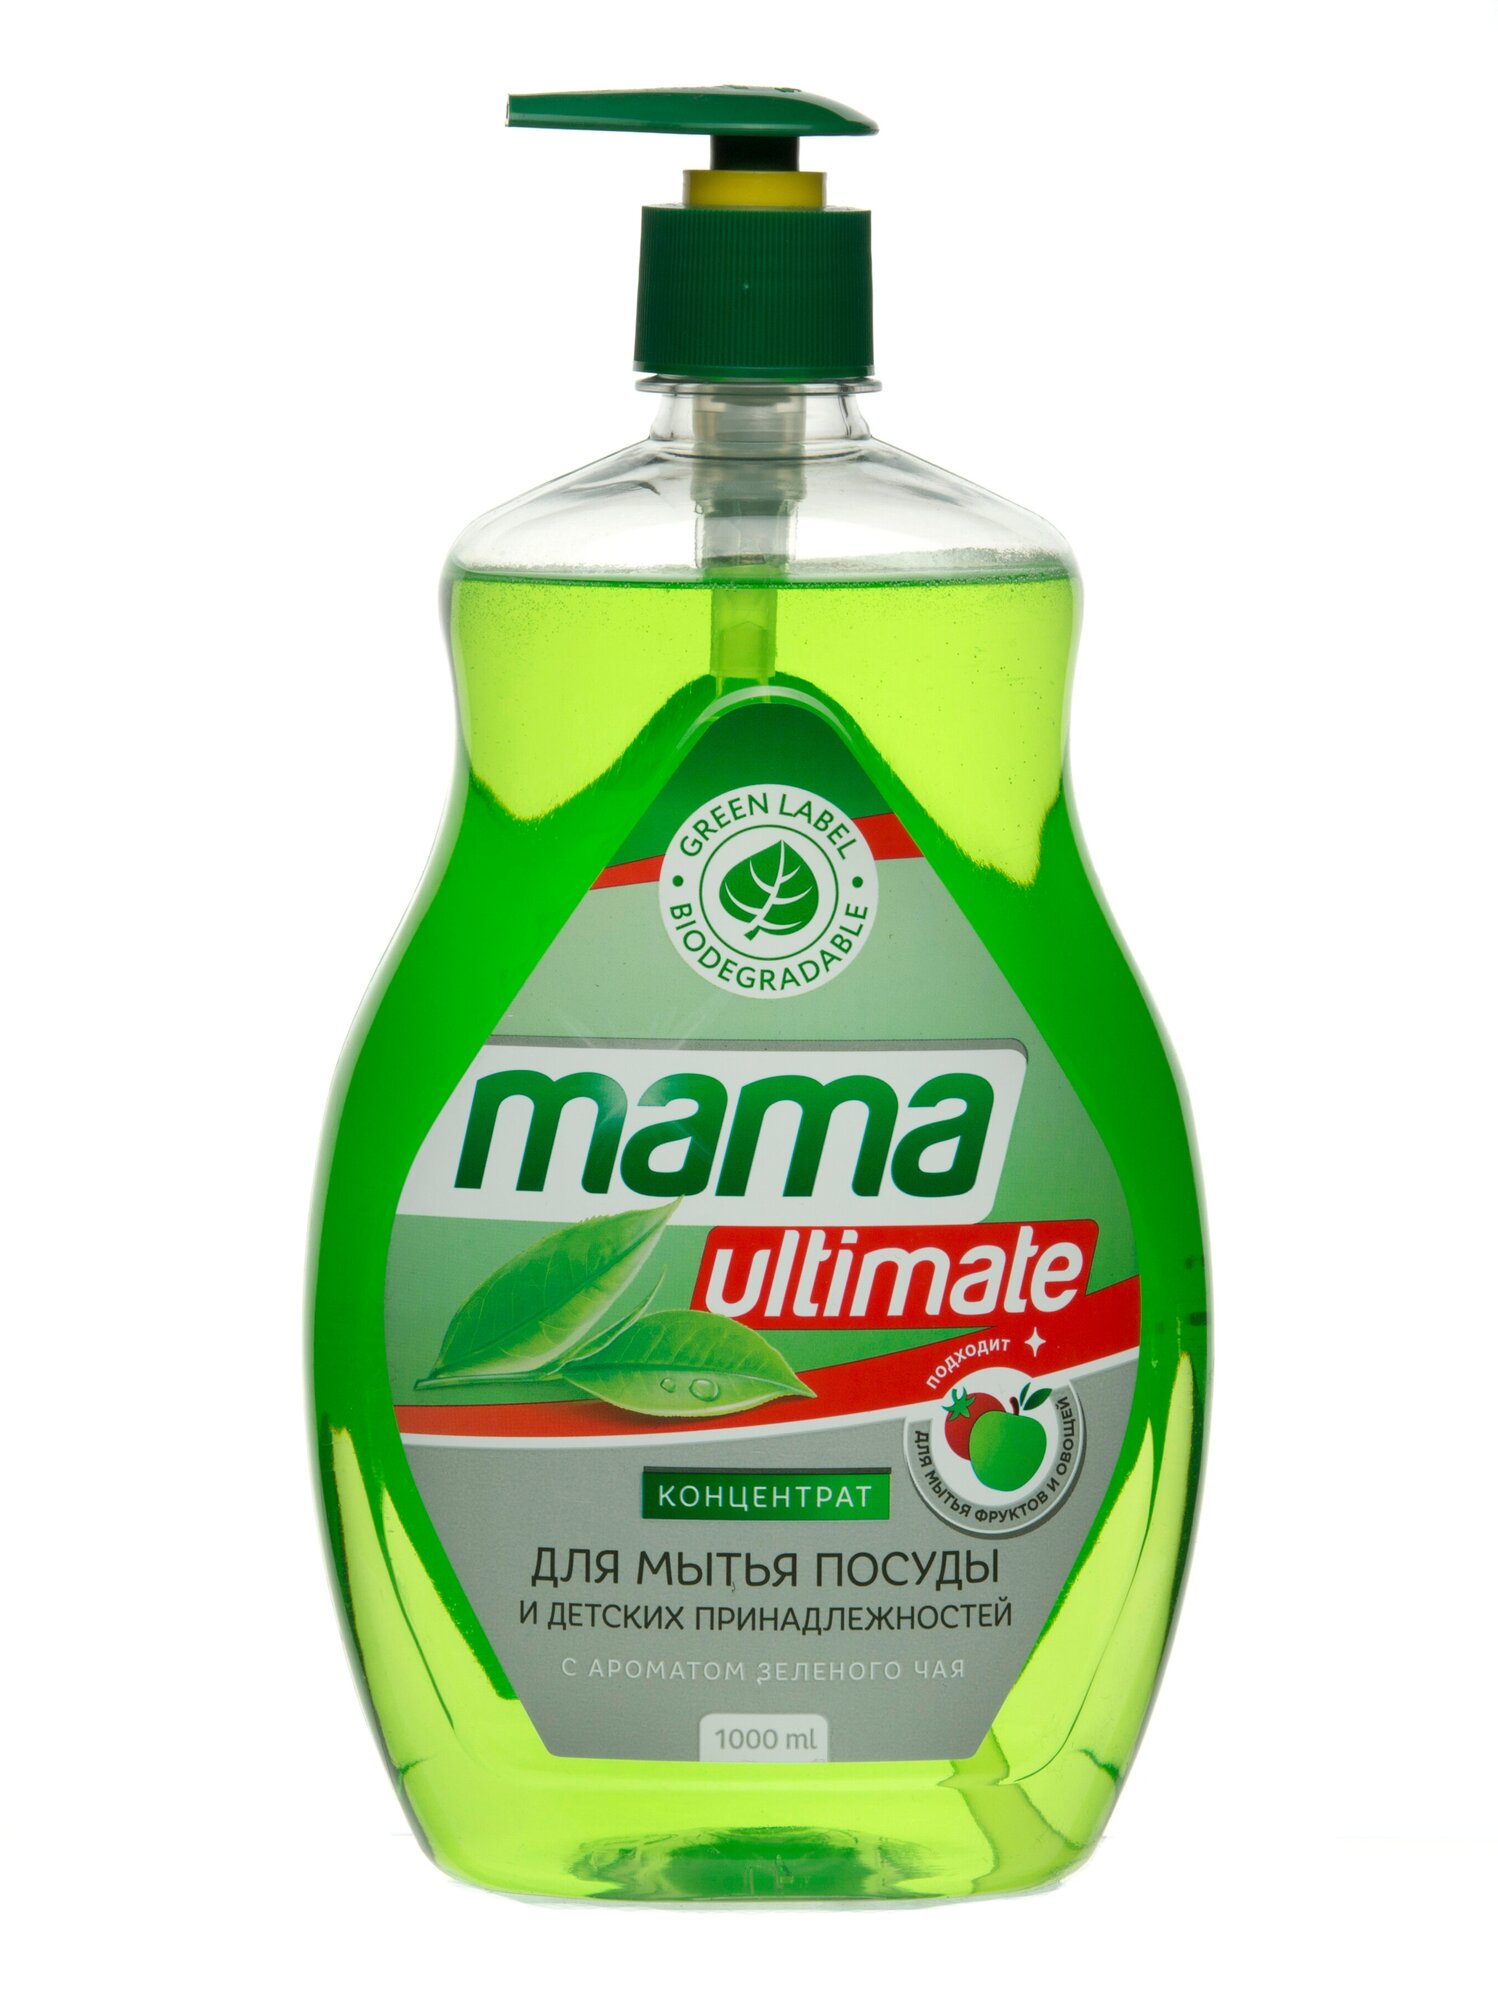 Средство-концентрат для мытья посуды, фруктов, овощей и детских принадлежностей Mama Ultimate, зеленый чай, 1 л